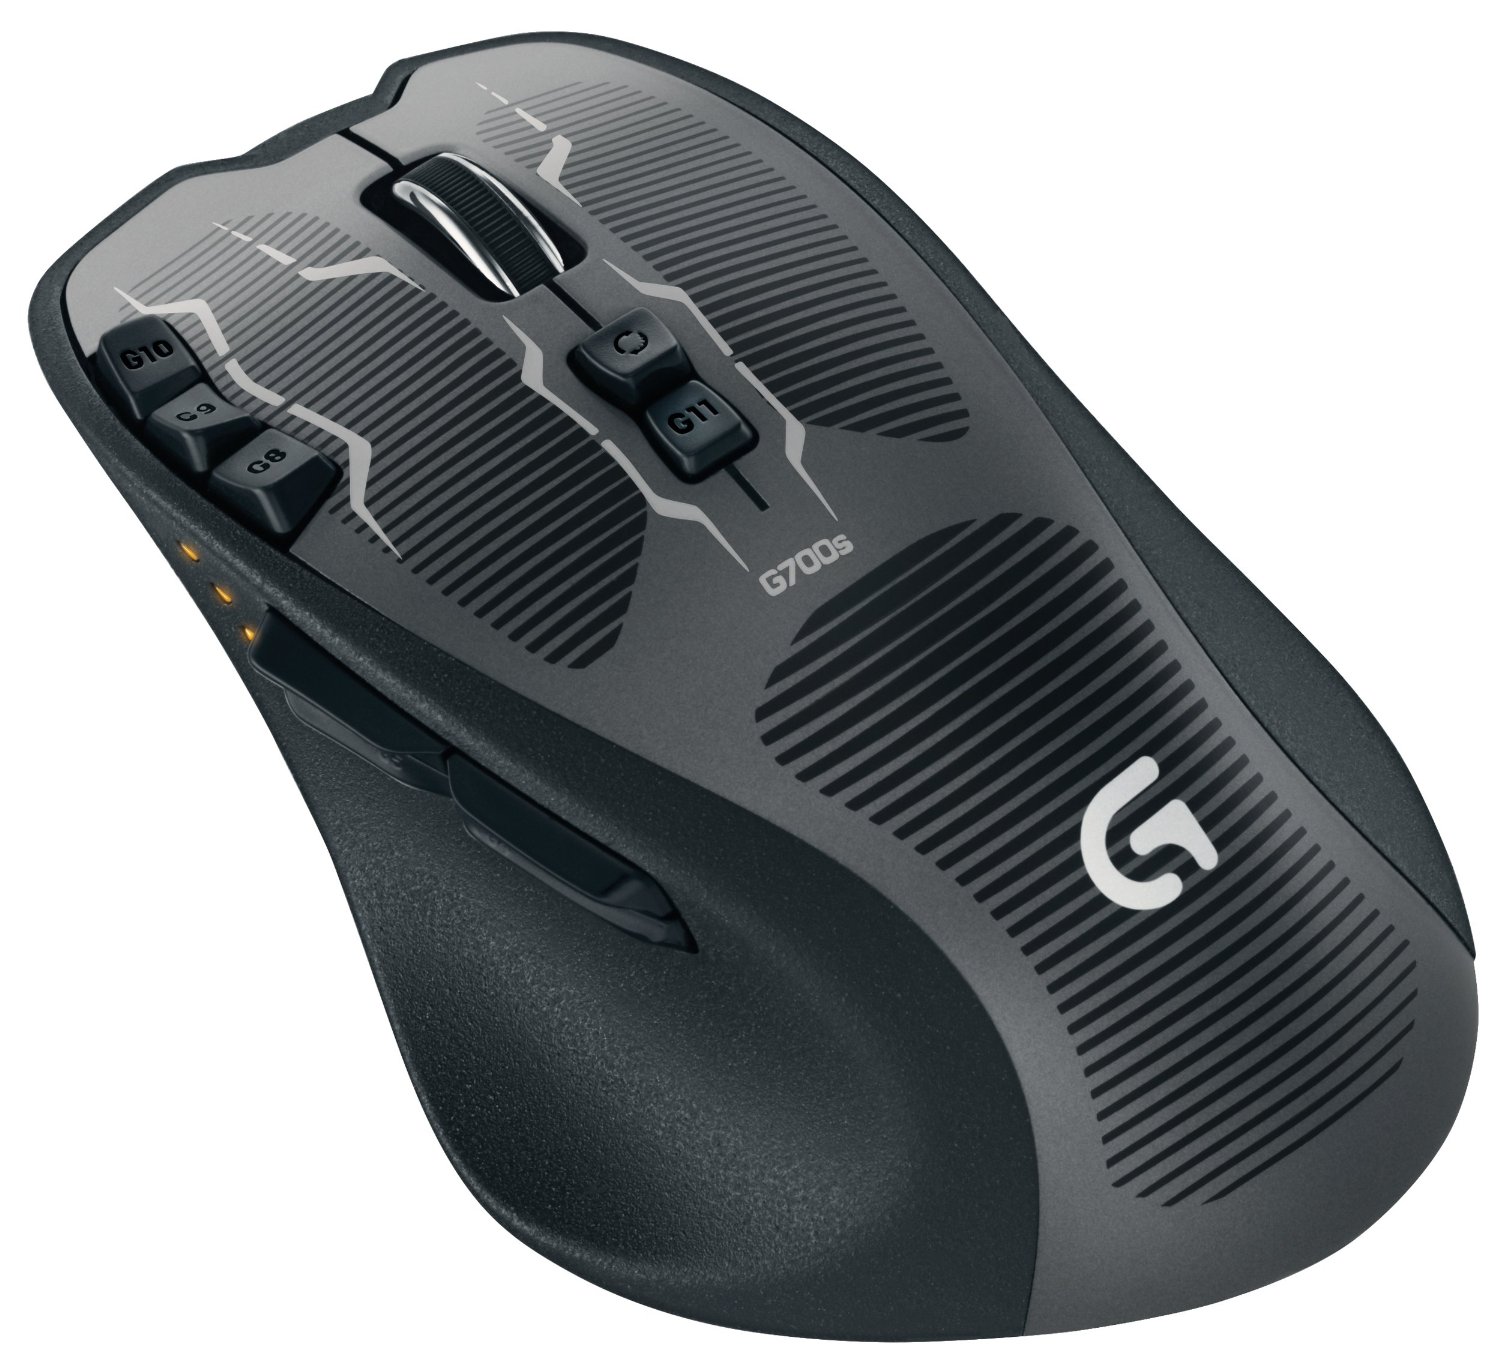 Logitech G700s mouse 07225